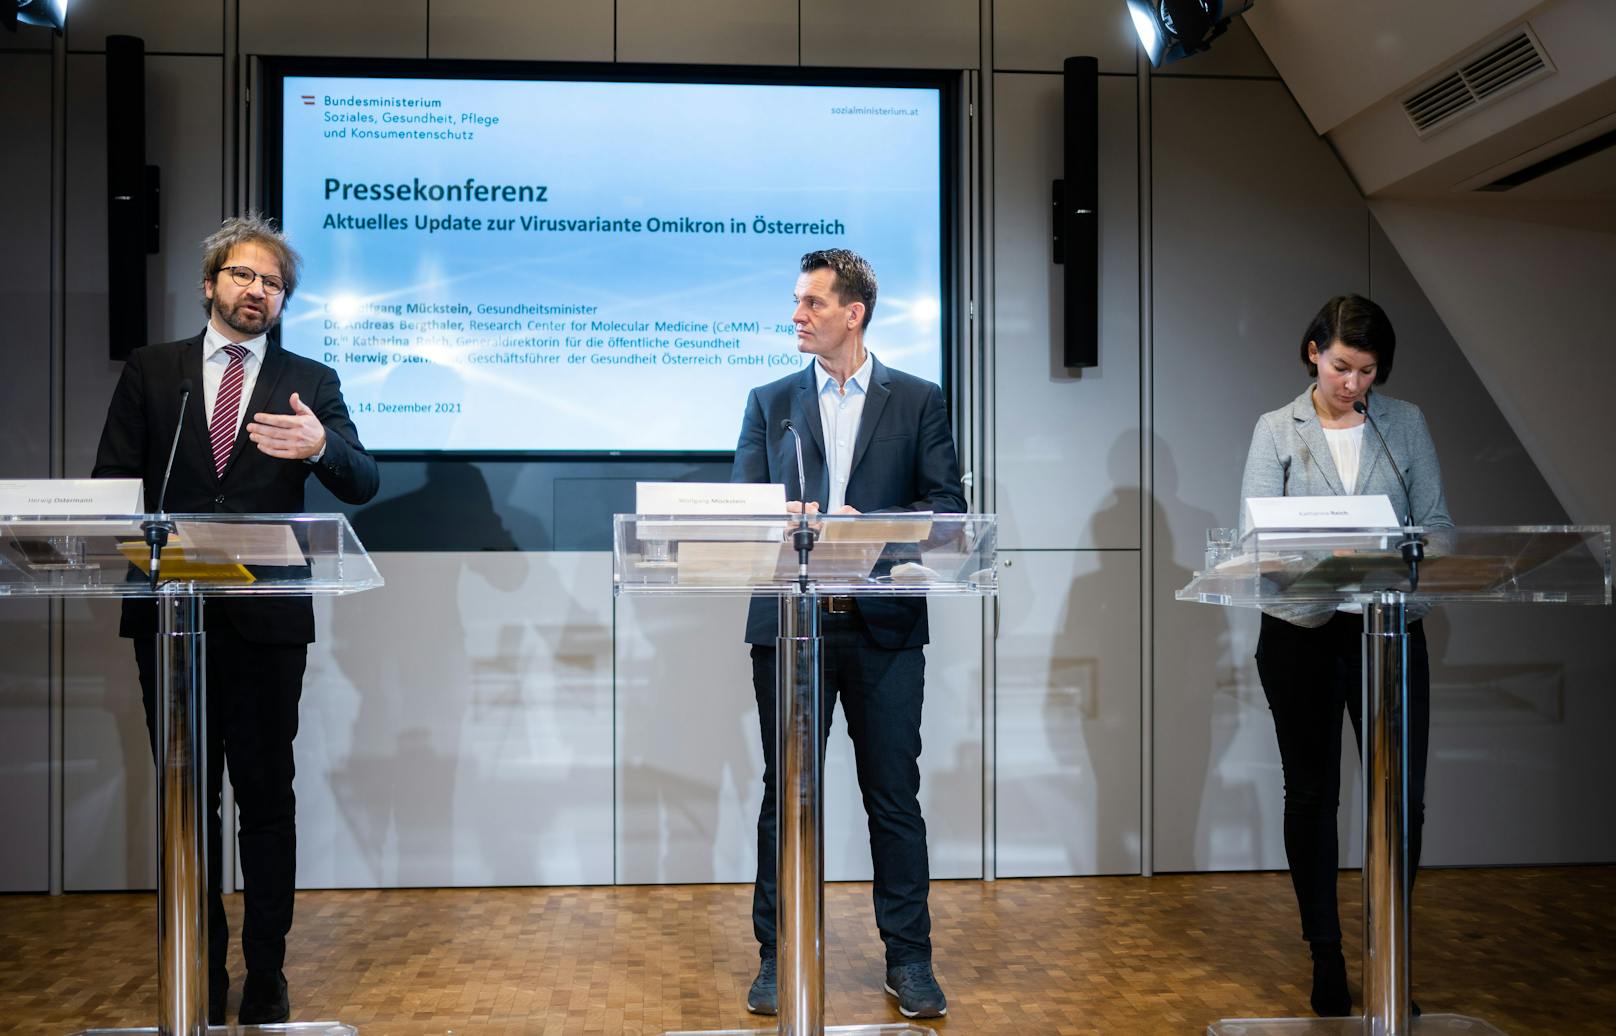 vlnr.: Herwig Ostermann während einer Pressekonferenz mit Gesundheitsminister Wolfgang Mückstein und Katharina Reich.